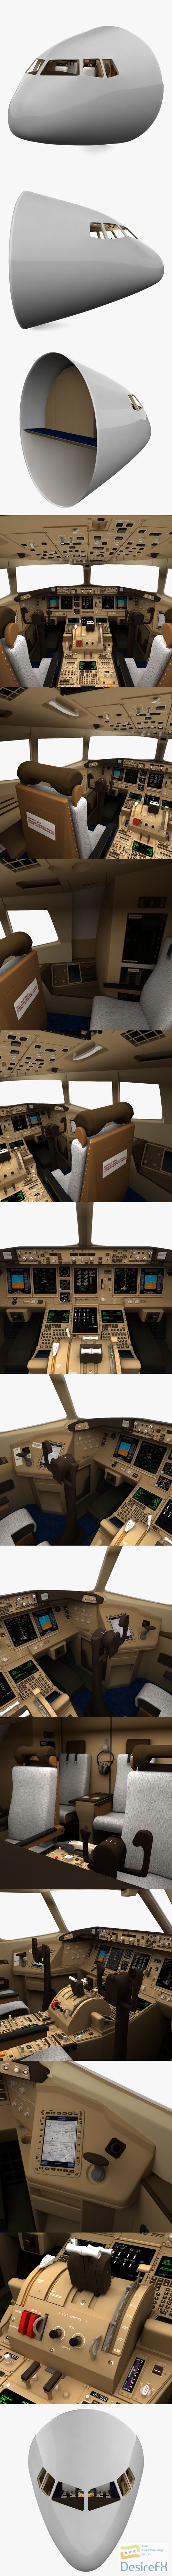 Boeing 777 Cockpit 3D Model